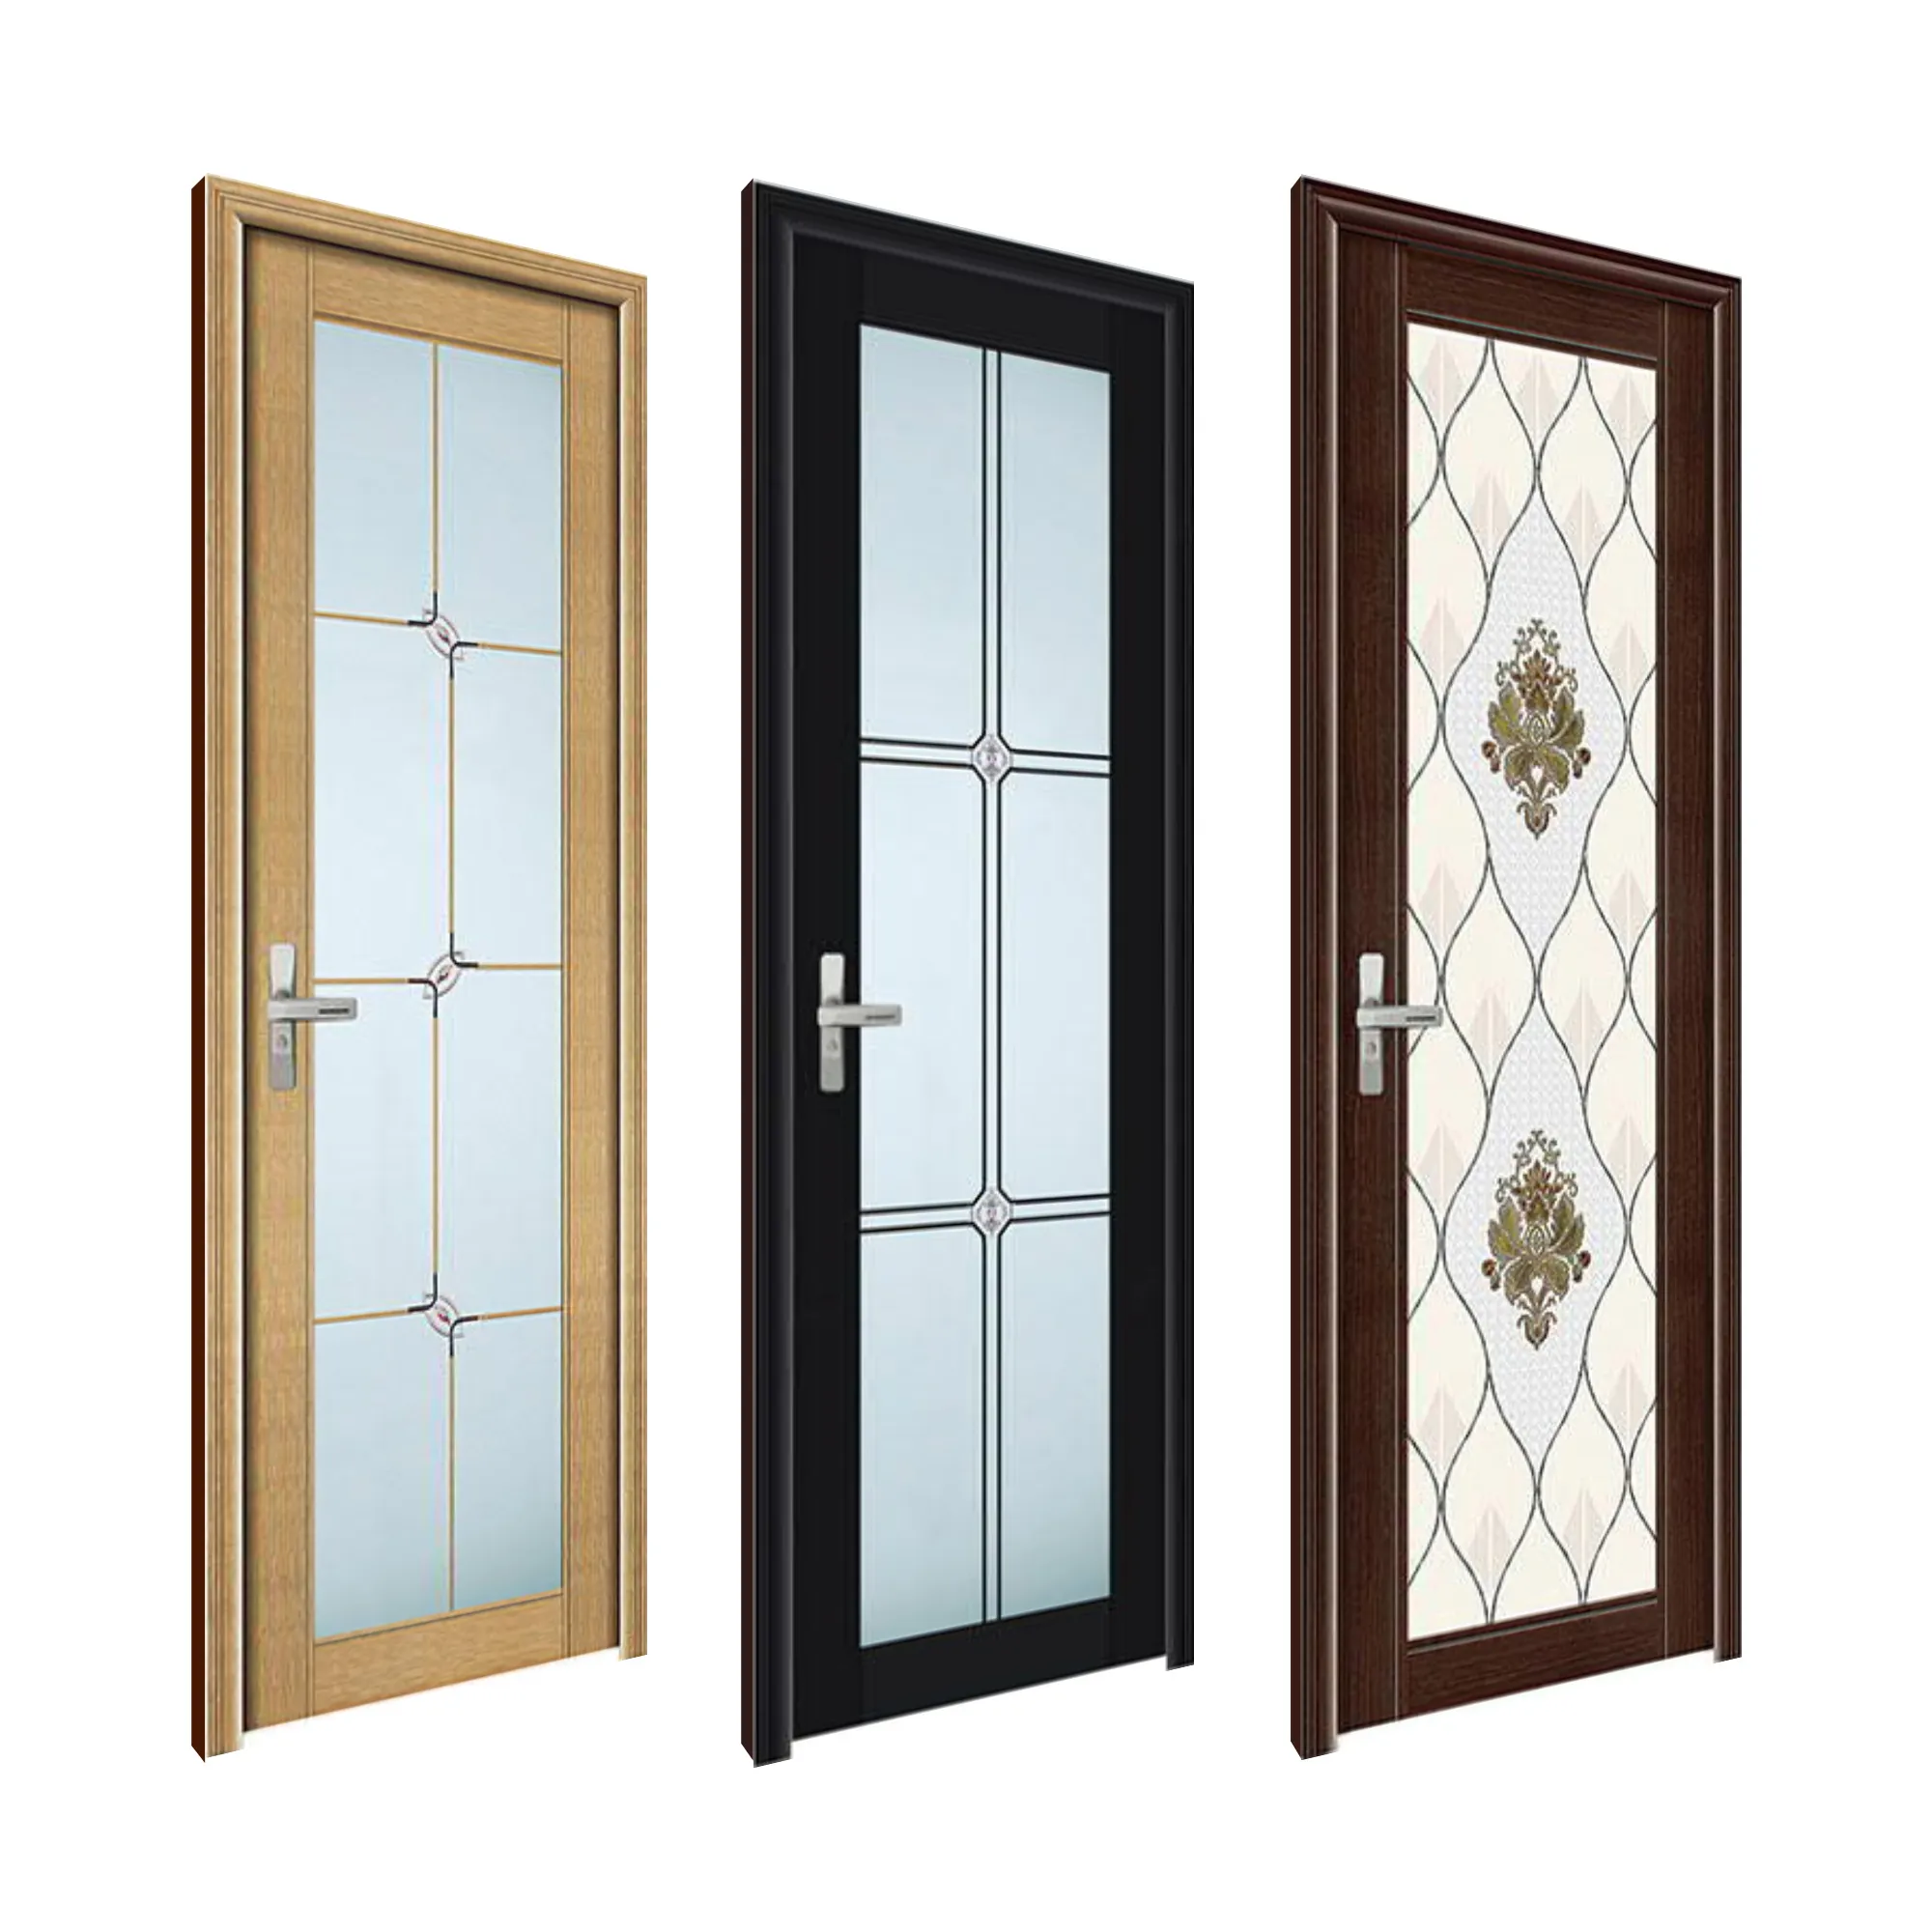 Sıcak satış yüksek kaliteli cam alüminyum WPC kapılar su geçirmez iç salıncak dekoratif giriş kapıları banyo balkon mutfak